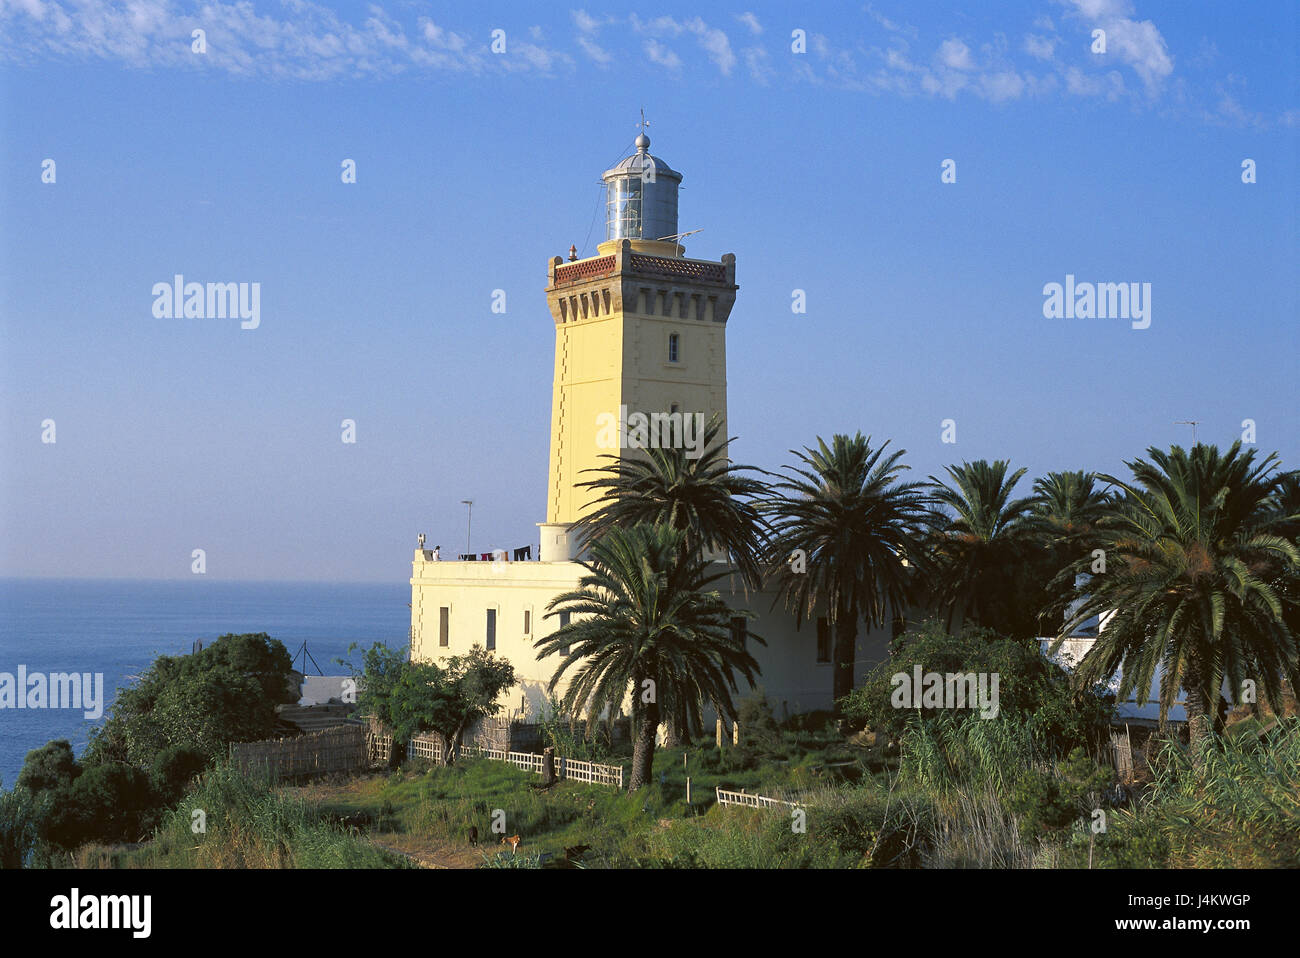 Au Maroc, le Souk Khemis Anjra du phare, Nordwestafrika, coast, palmiers, tour, Beacon, caractère, navigation sur la mer, de la conception, de navigation, d'orientation, orientation, aide à la navigation, la navigation Banque D'Images